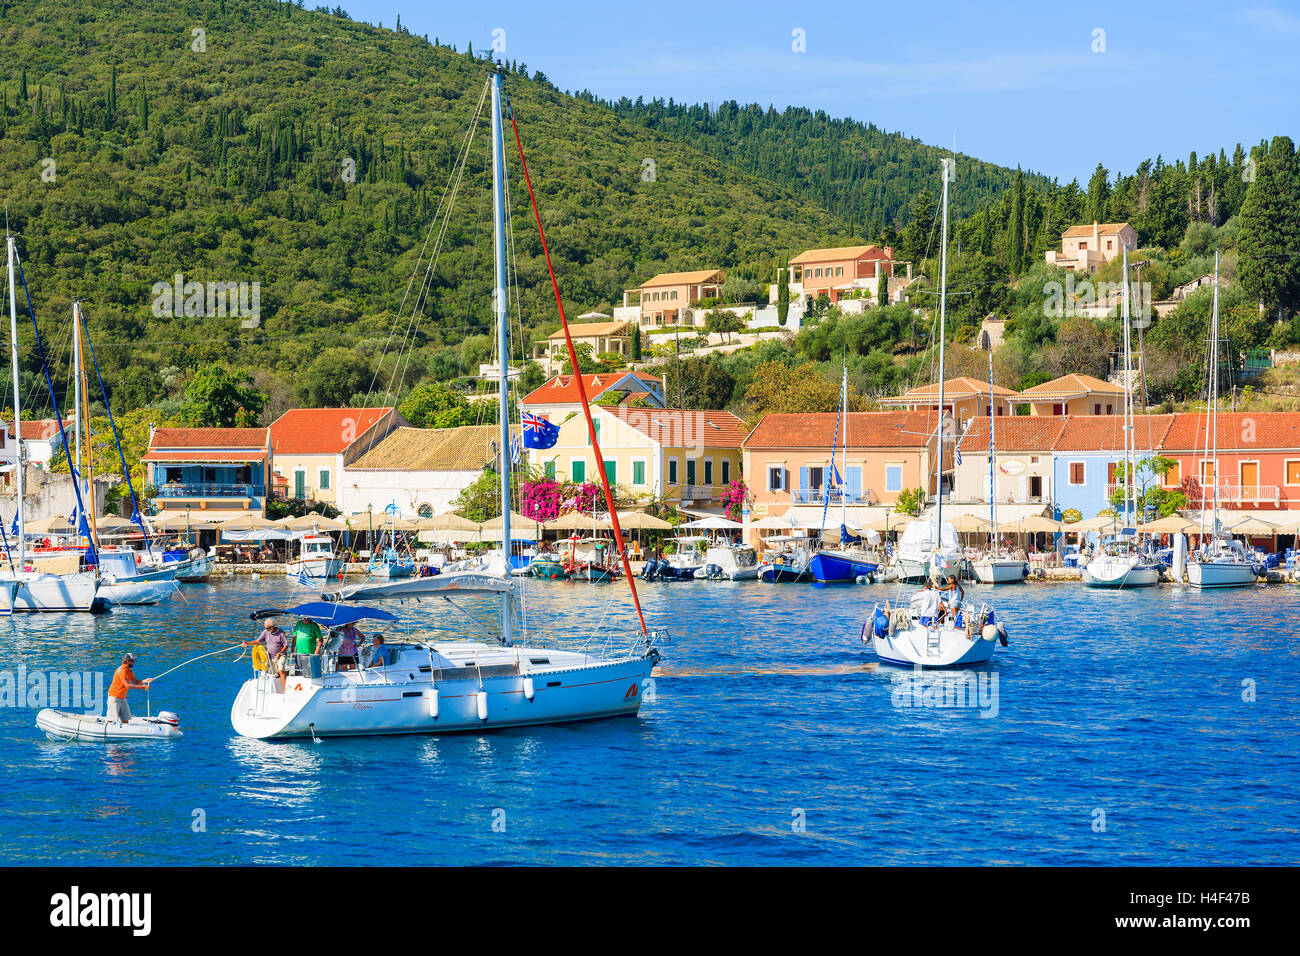 FISKARDO PORT, l'isola di Cefalonia, Grecia - Sep 19, 2014: Yacht barche sul blu del mare e la vista di Fiskardo villaggio di pescatori con la porta. Yachting è una delle attività più popolari su isole greche. Foto Stock